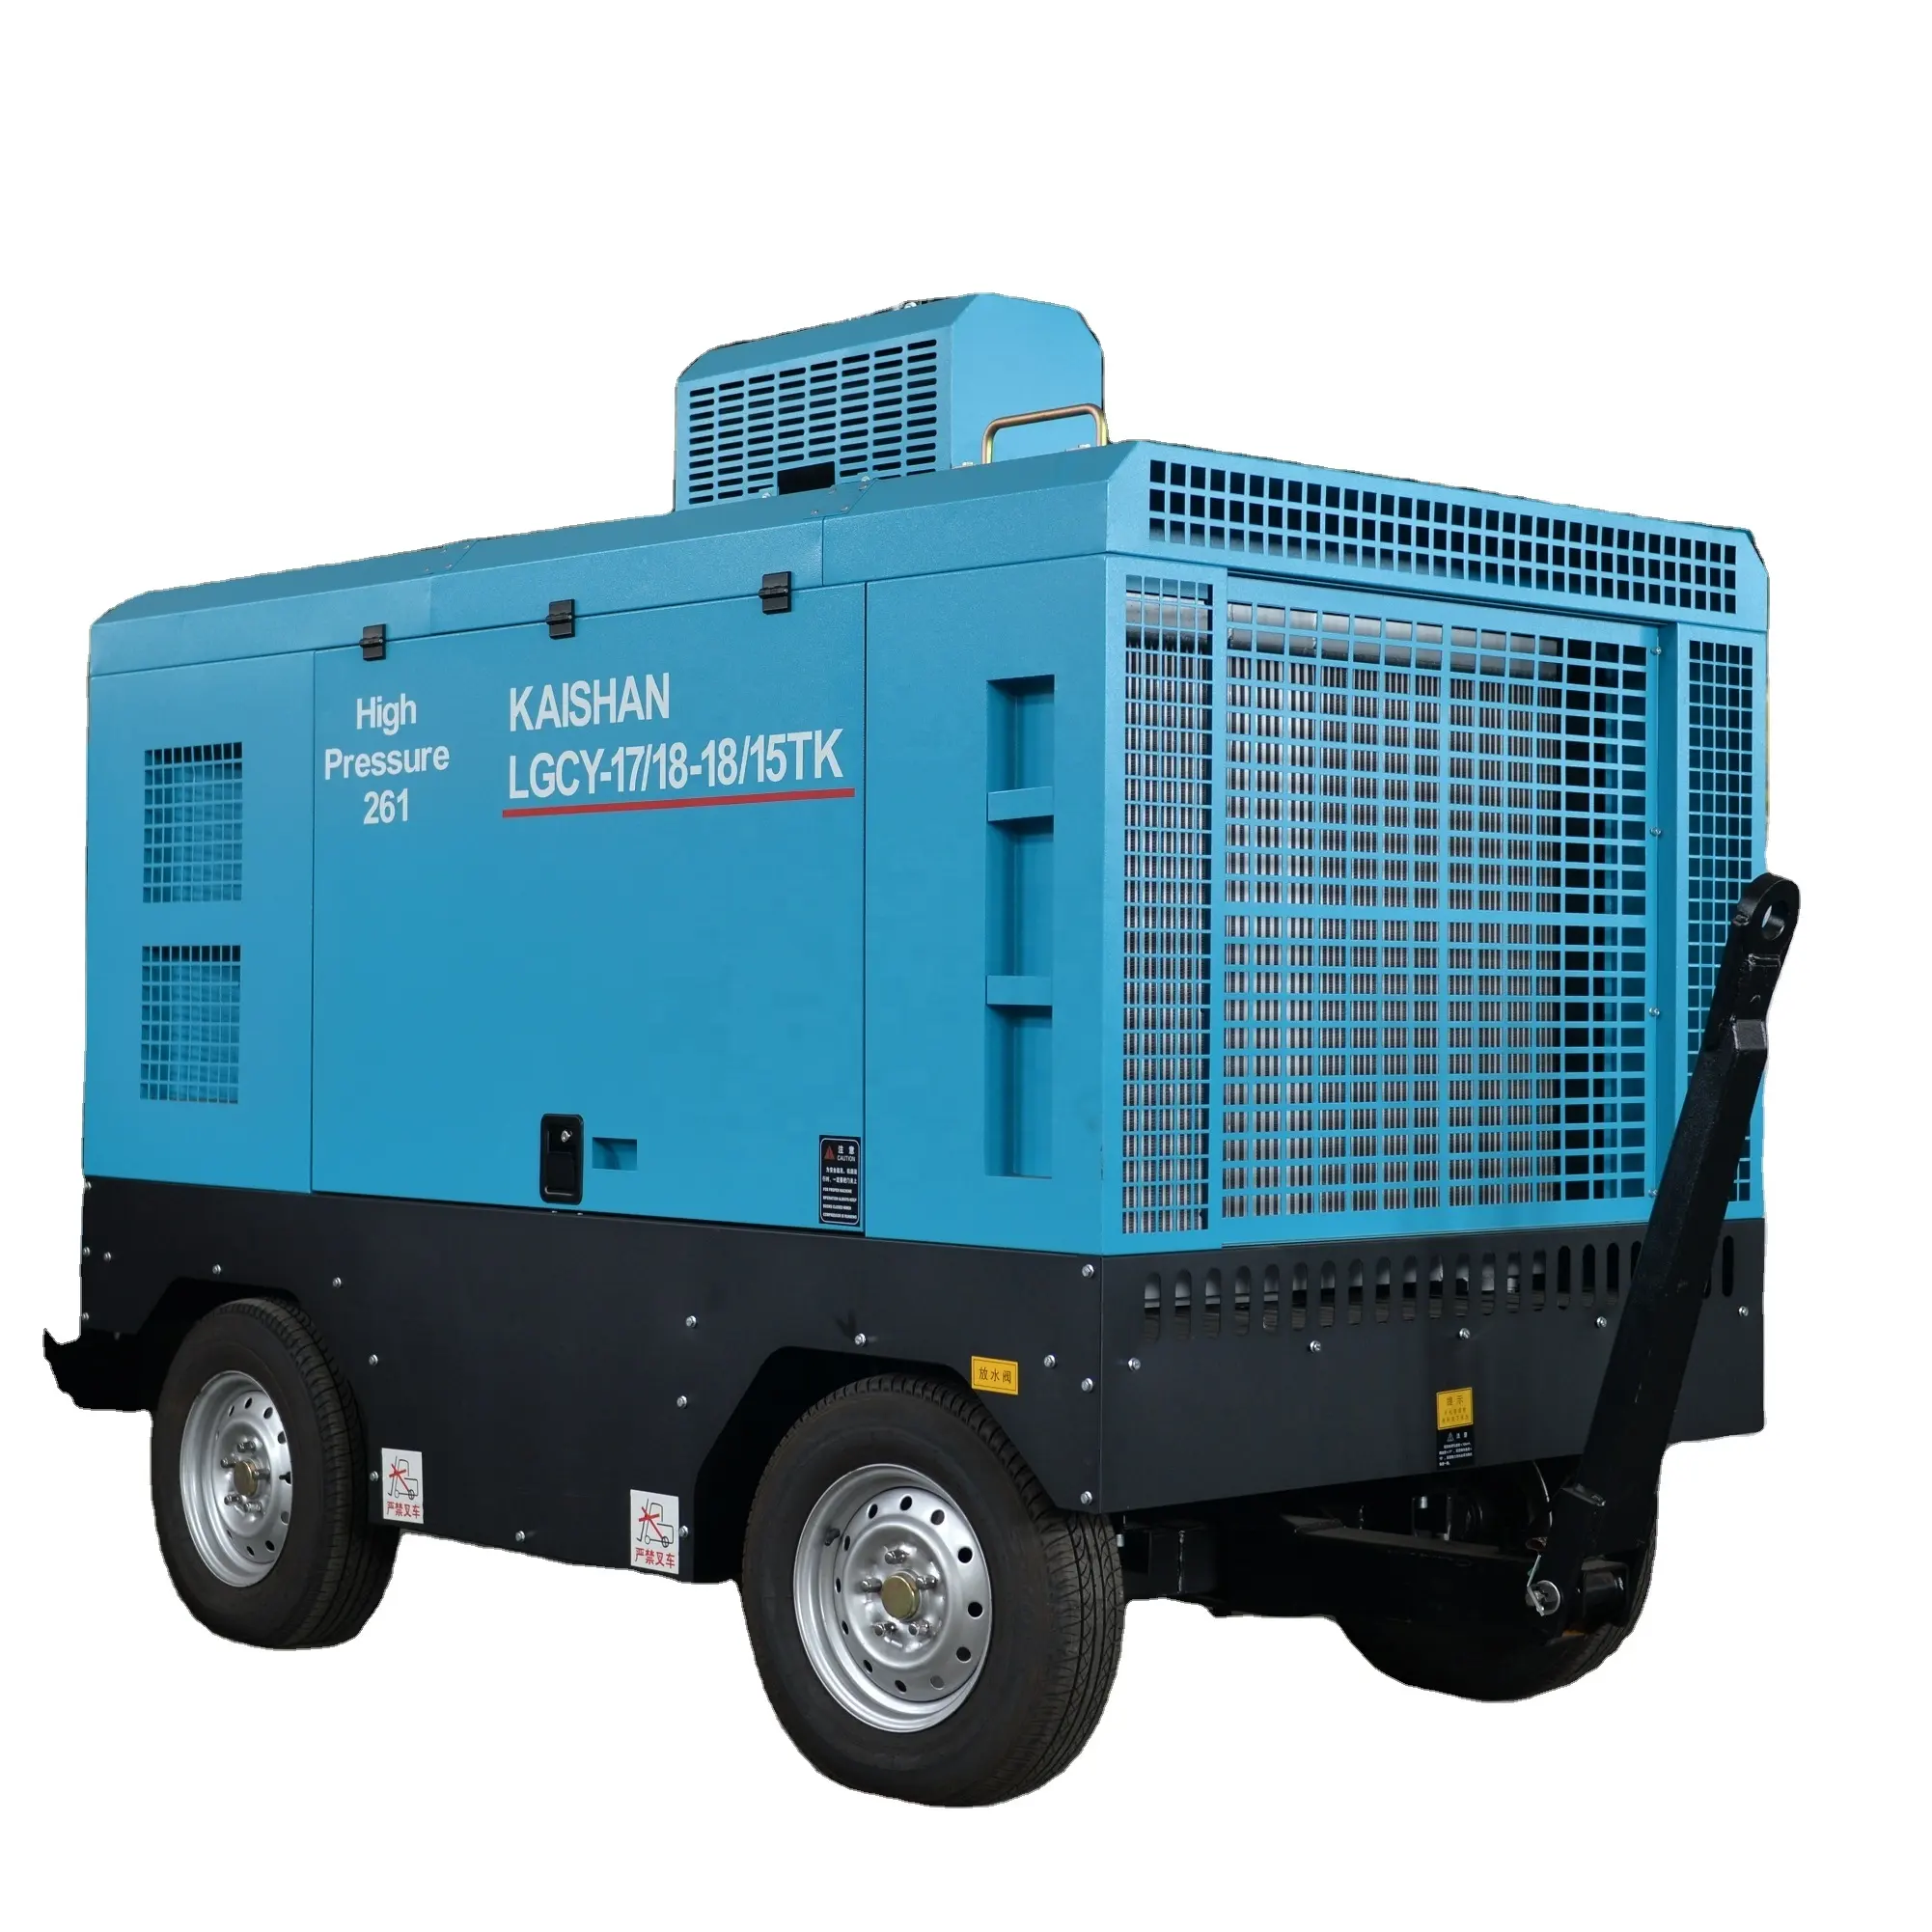 Kaishan 15-18bar 210HP döner kompresör dizel madencilik tekerlek tipi vida jack çekiç için hava kompresörü